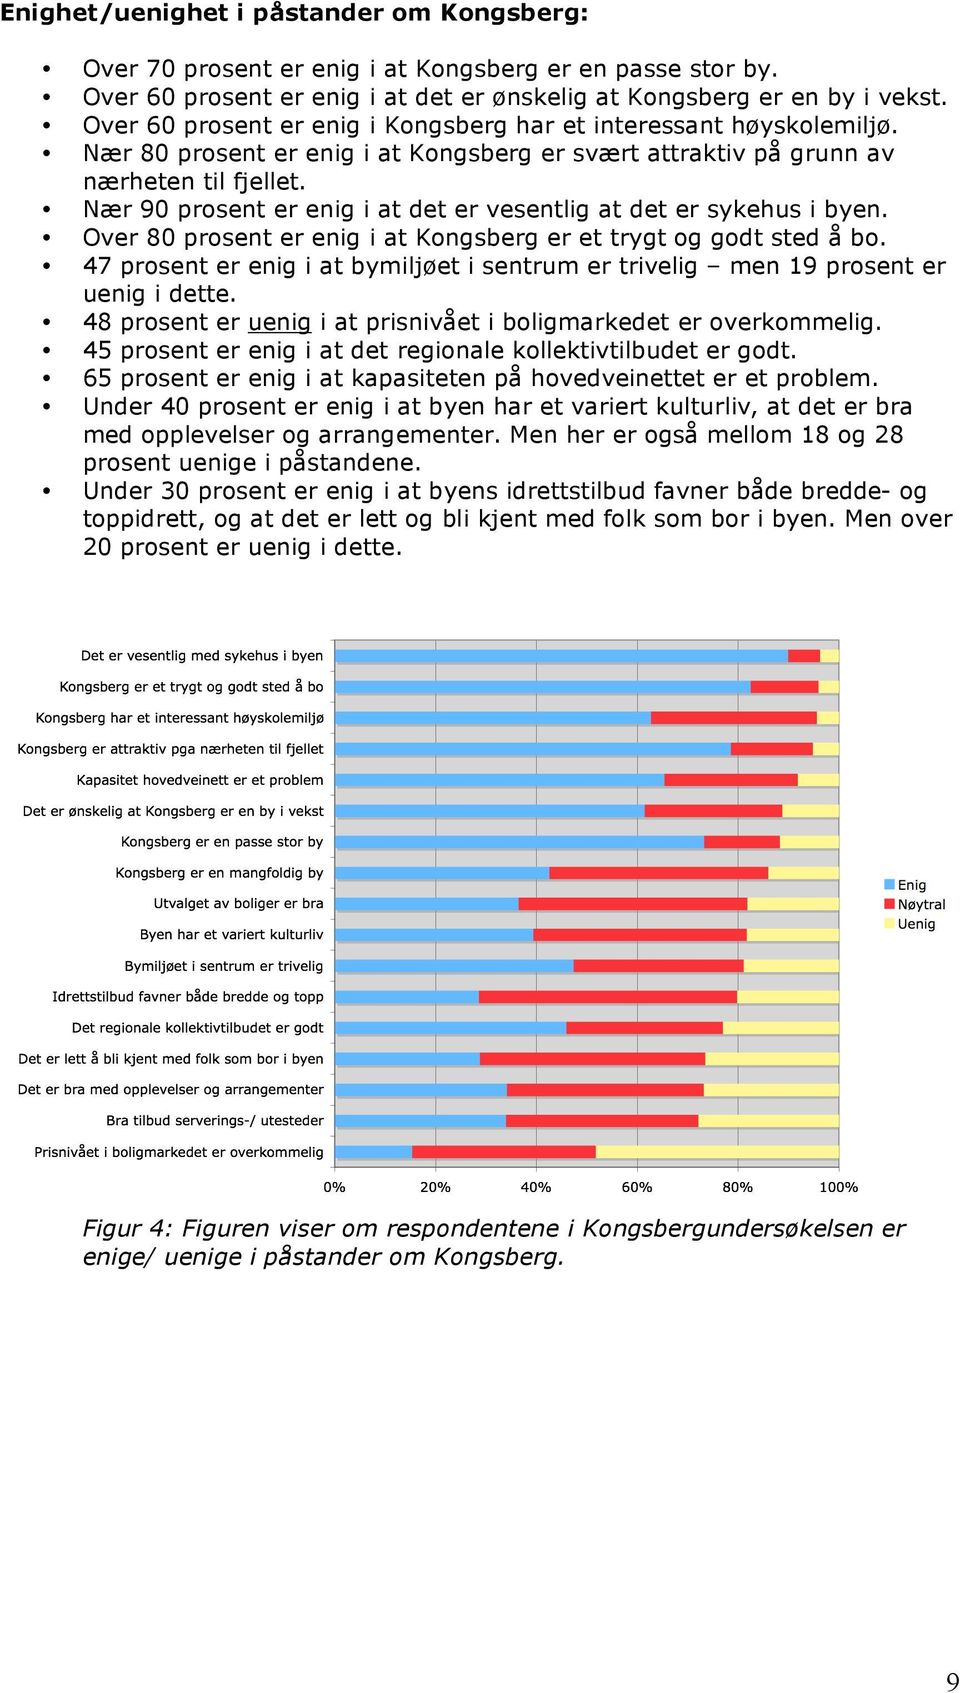 Nær 90 prosent er enig i at det er vesentlig at det er sykehus i byen. Over 80 prosent er enig i at Kongsberg er et trygt og godt sted å bo.